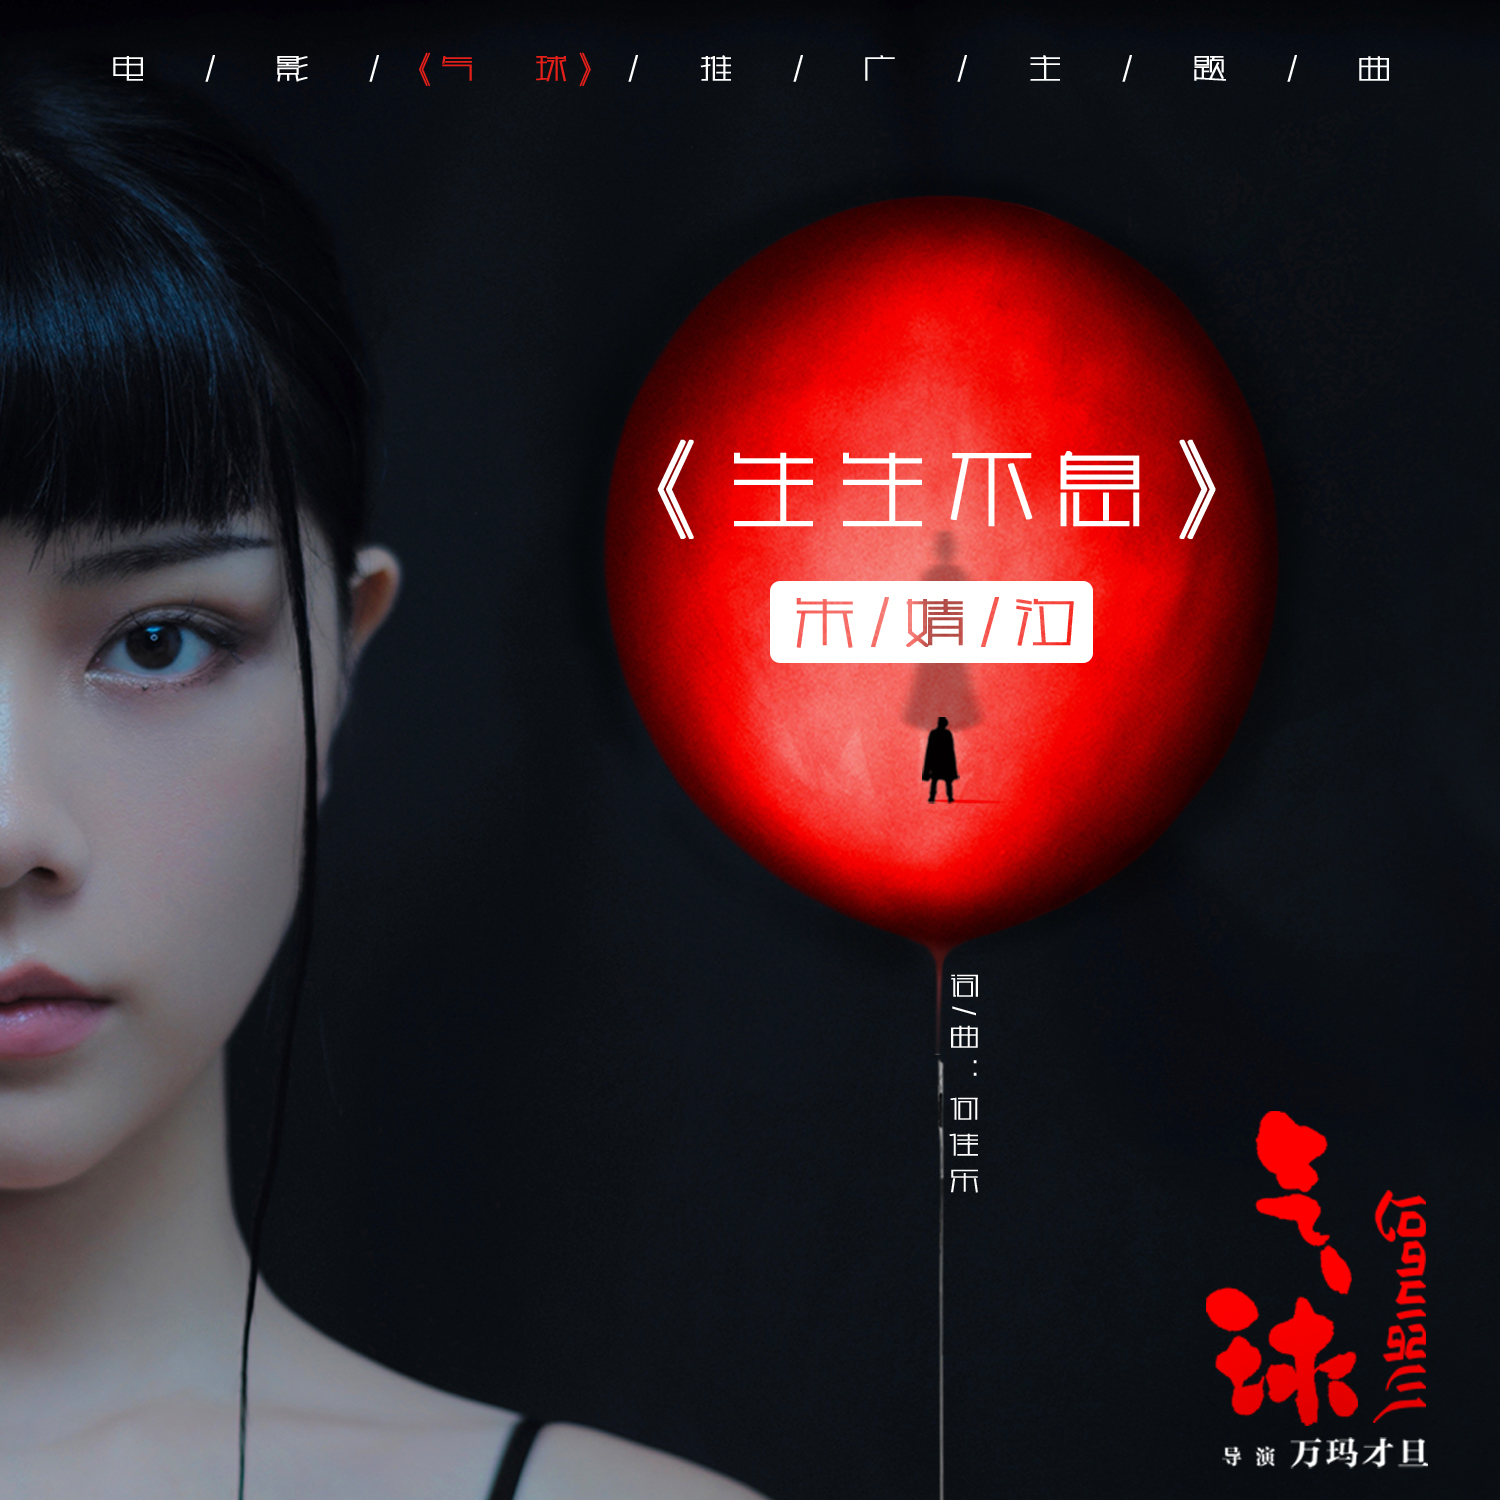 电影《气球》主题曲《生生不息》上线 唱作歌手朱婧汐实力献唱